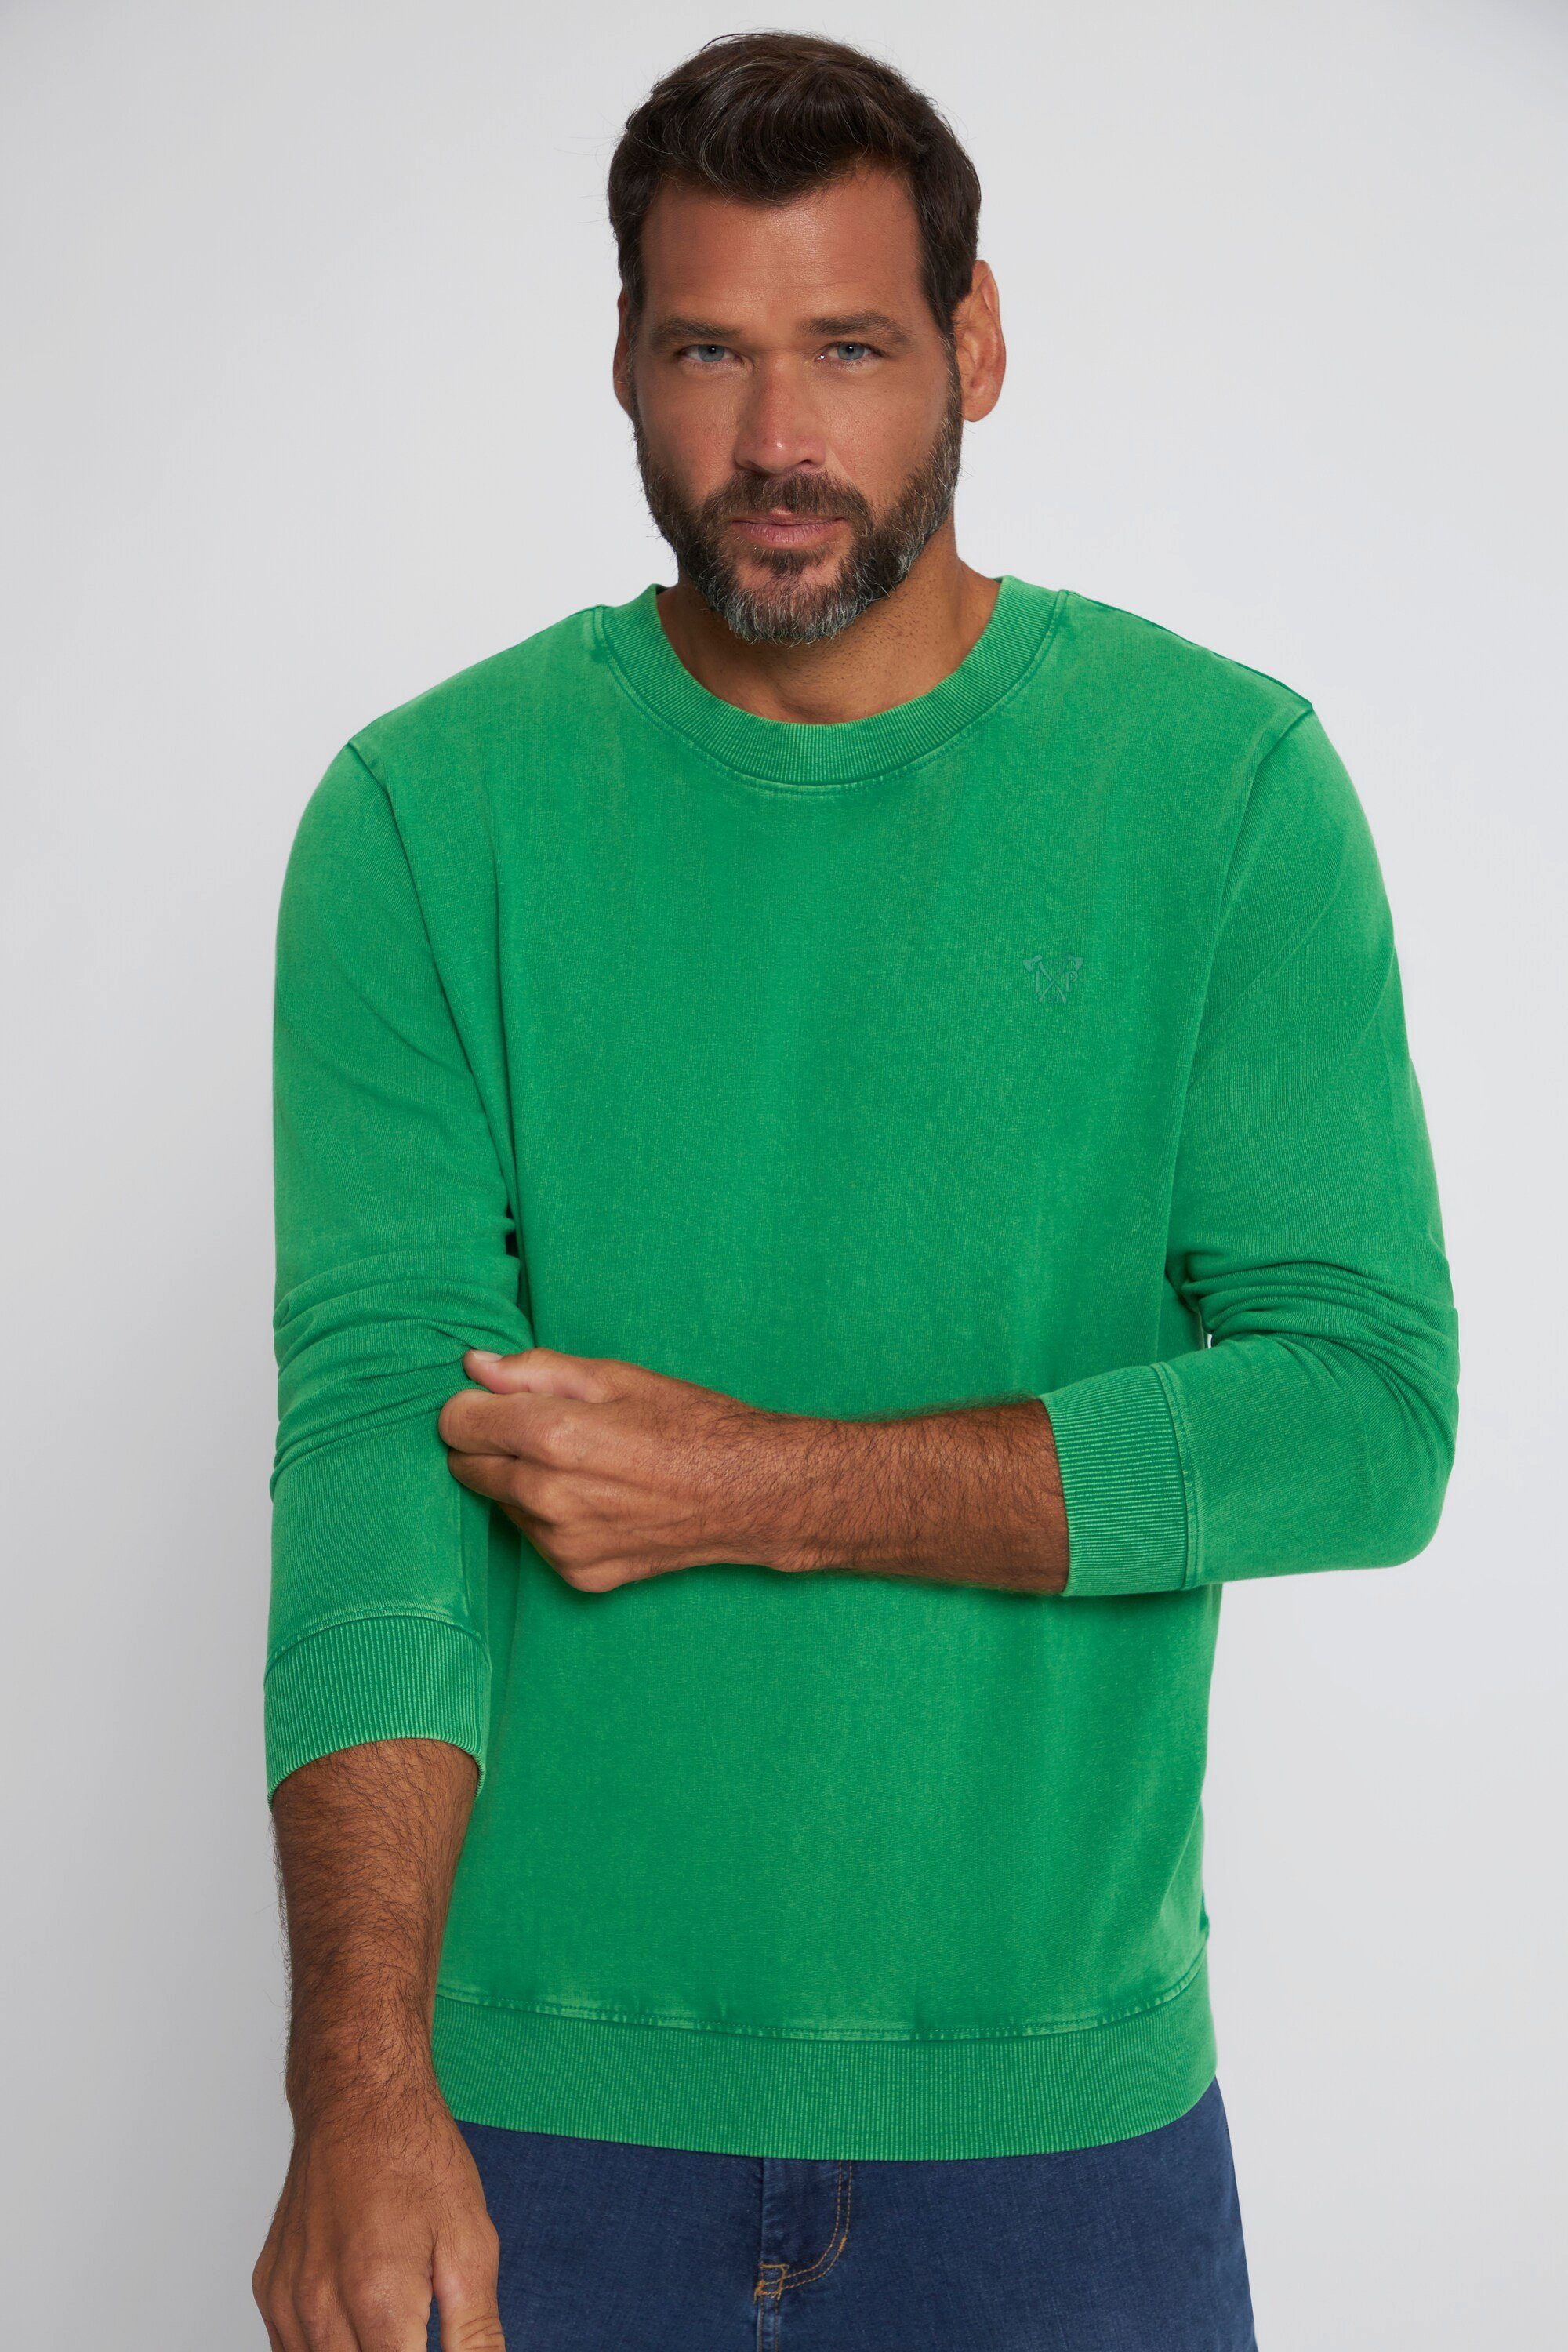 T-Shirt Bauchfit JP1880 Sweatshirt washed grün leichte acid Qualität